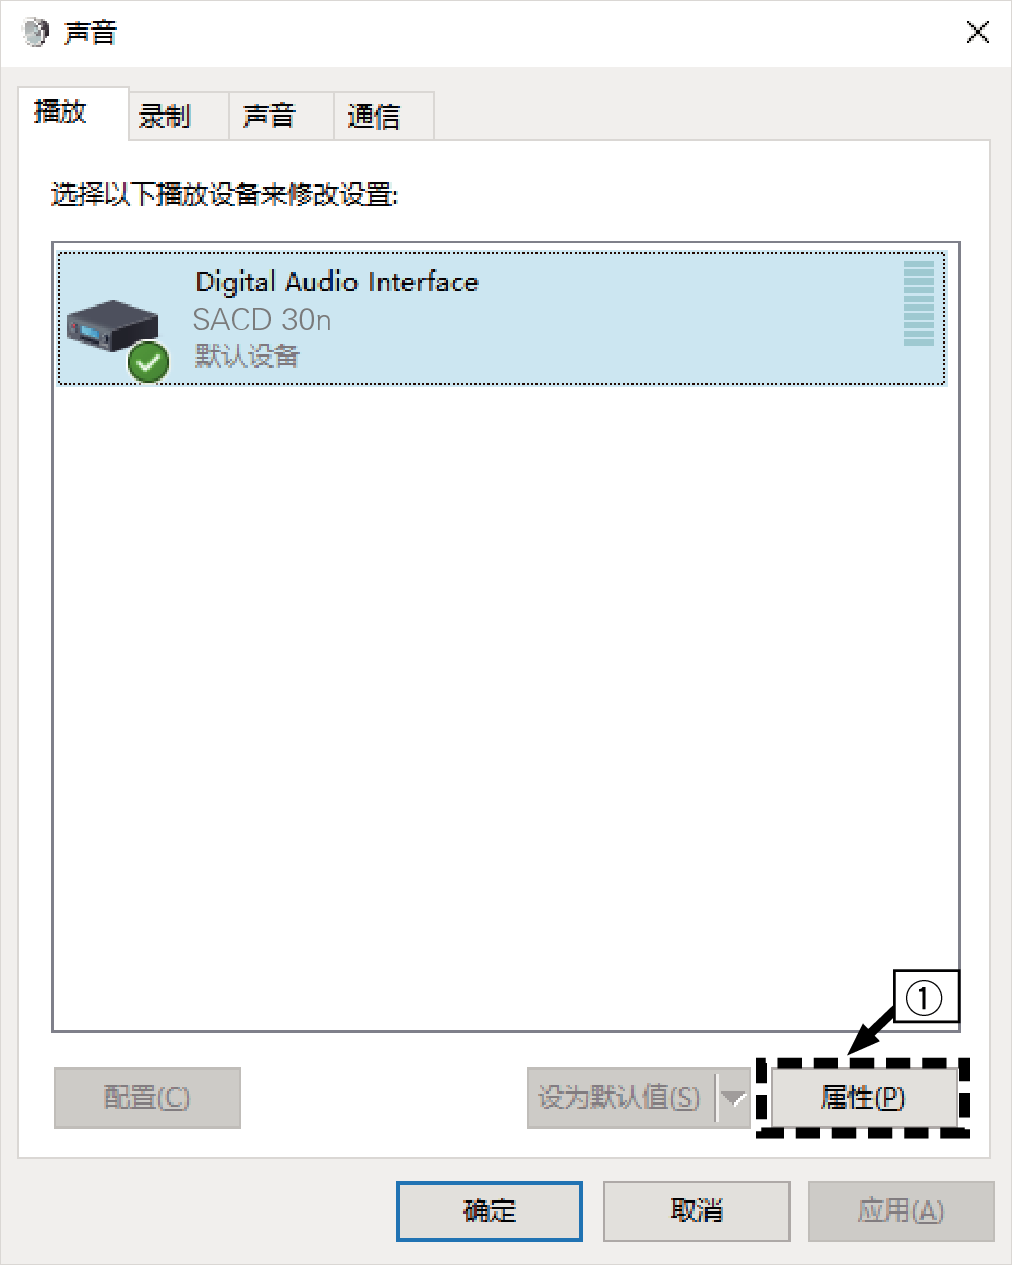 Windows setting 1 SACD30n